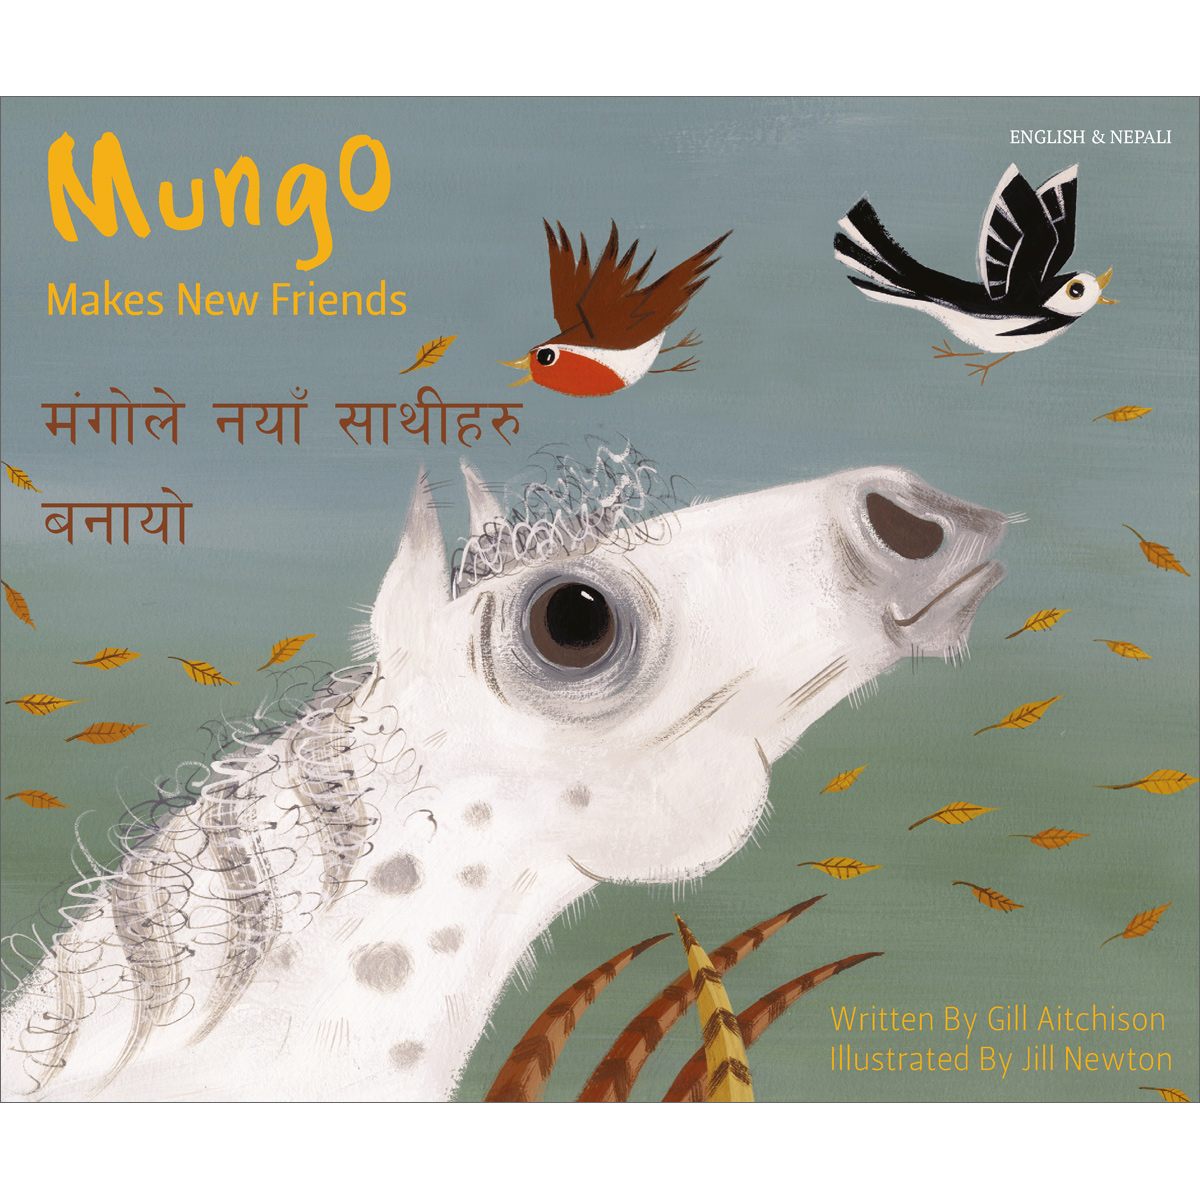 Mungo Makes New Friends: Nepali & English